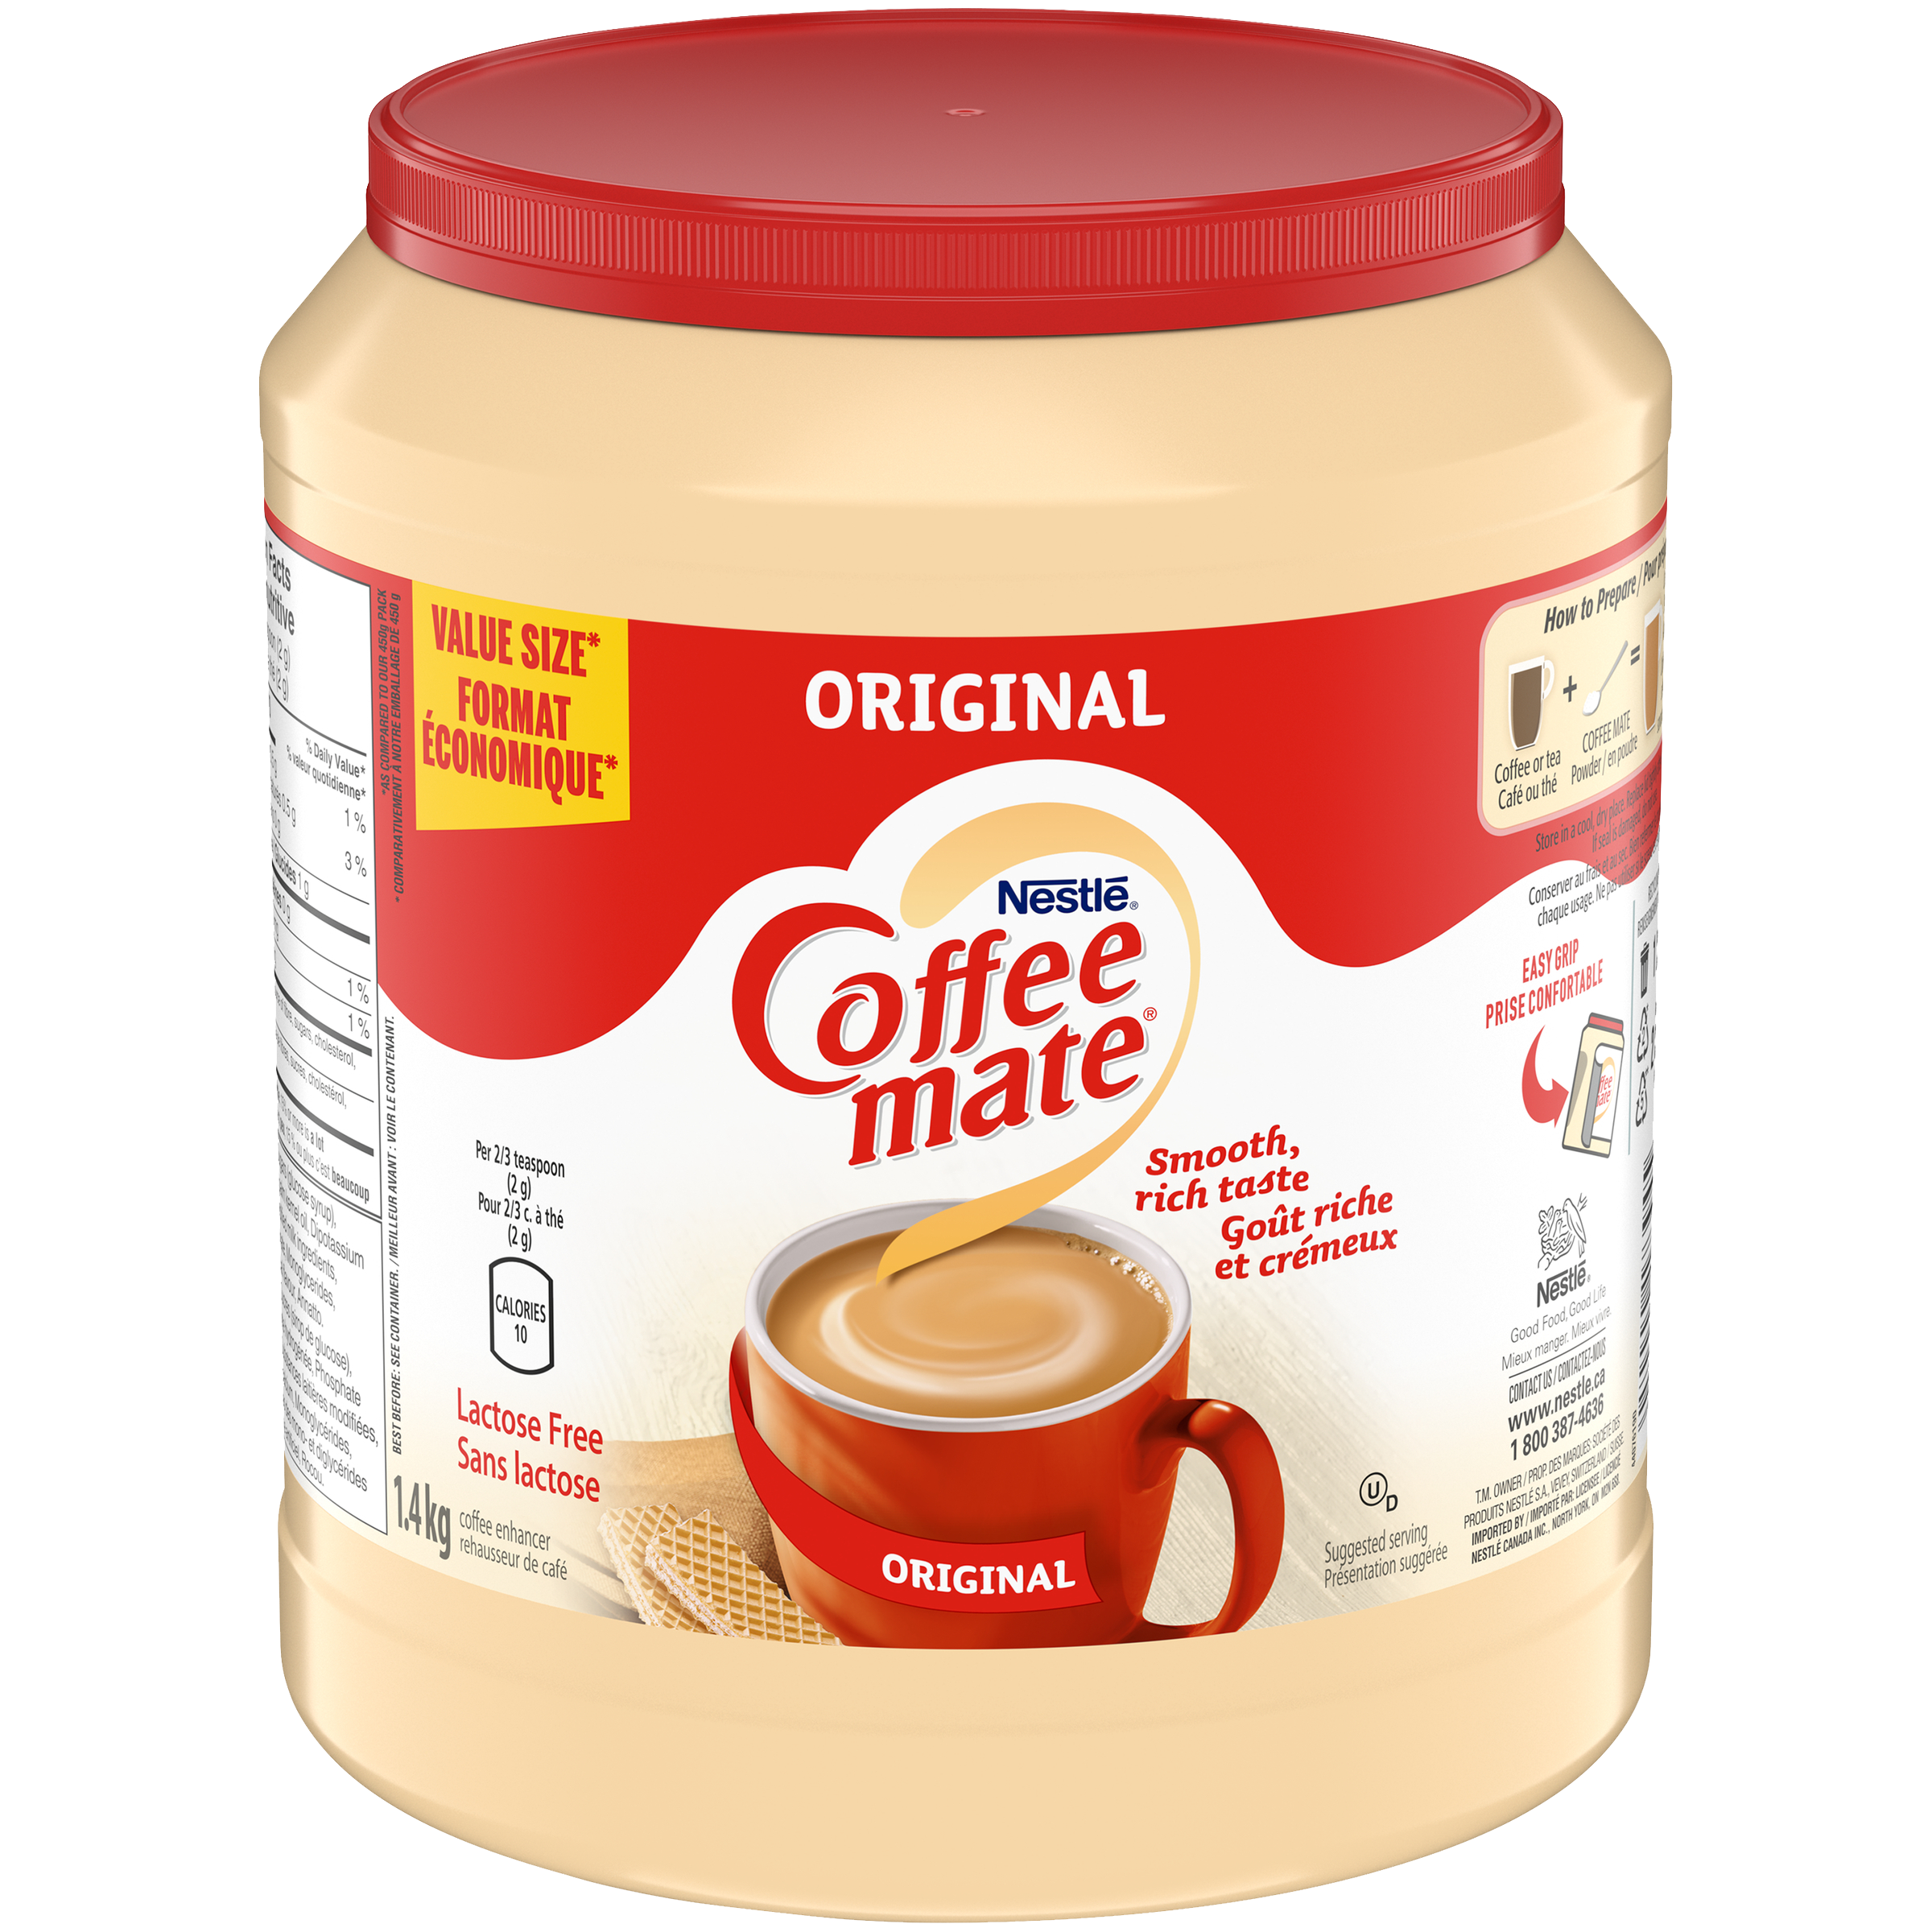 COFFEE-MATE Original (1.4 kg) | Nestlé Canada